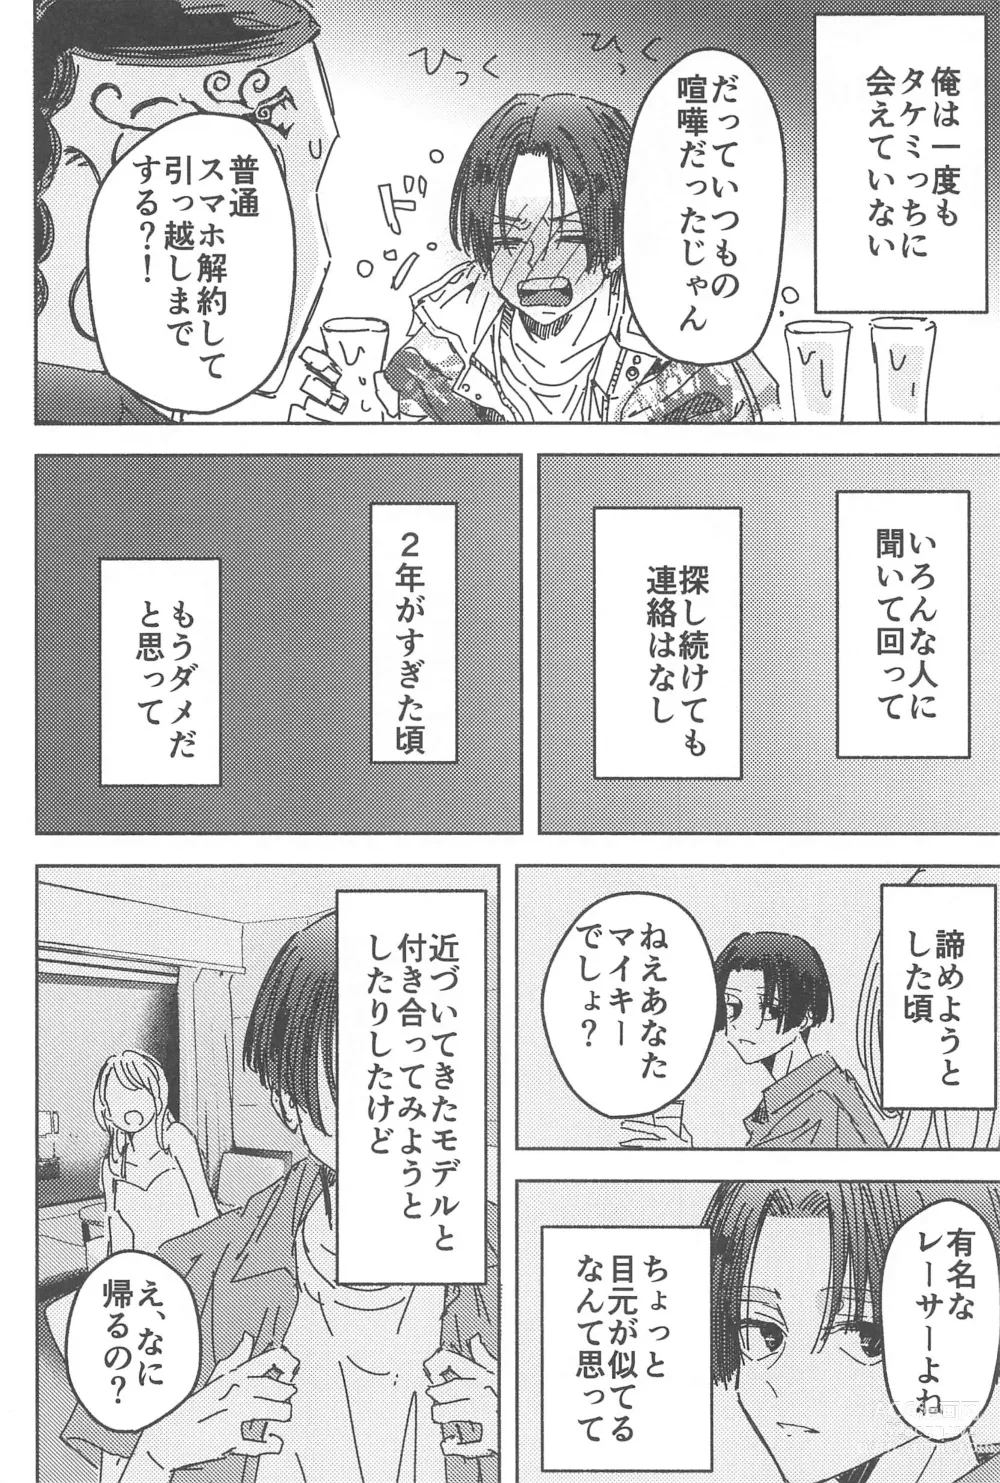 Page 9 of doujinshi Wakareyou natte  nante Iwanai de